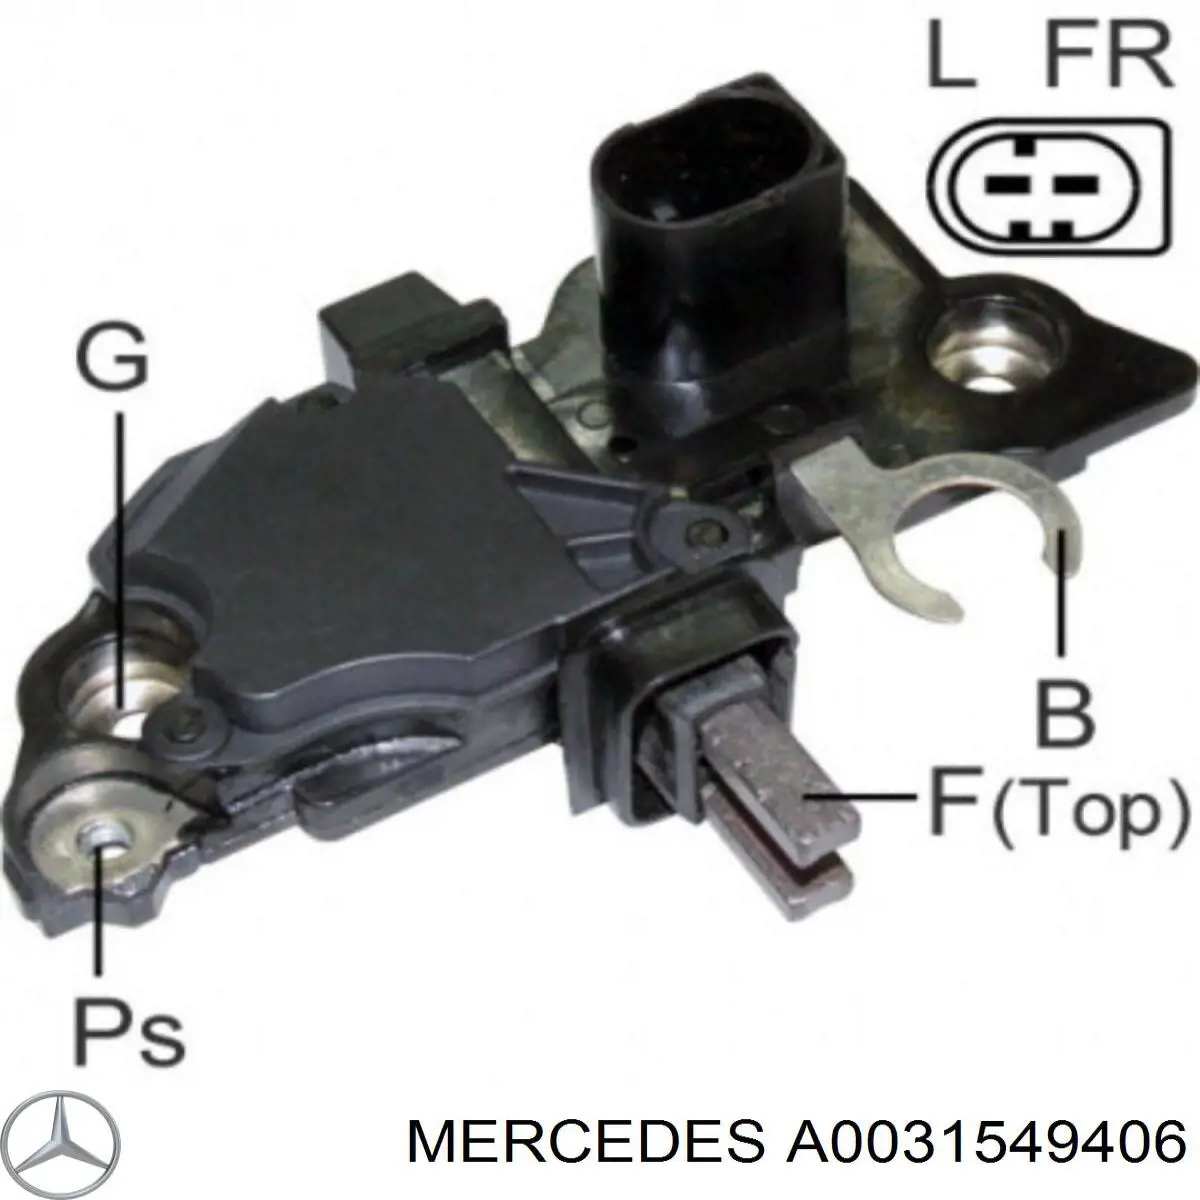 A0031549406 Mercedes relê-regulador do gerador (relê de carregamento)